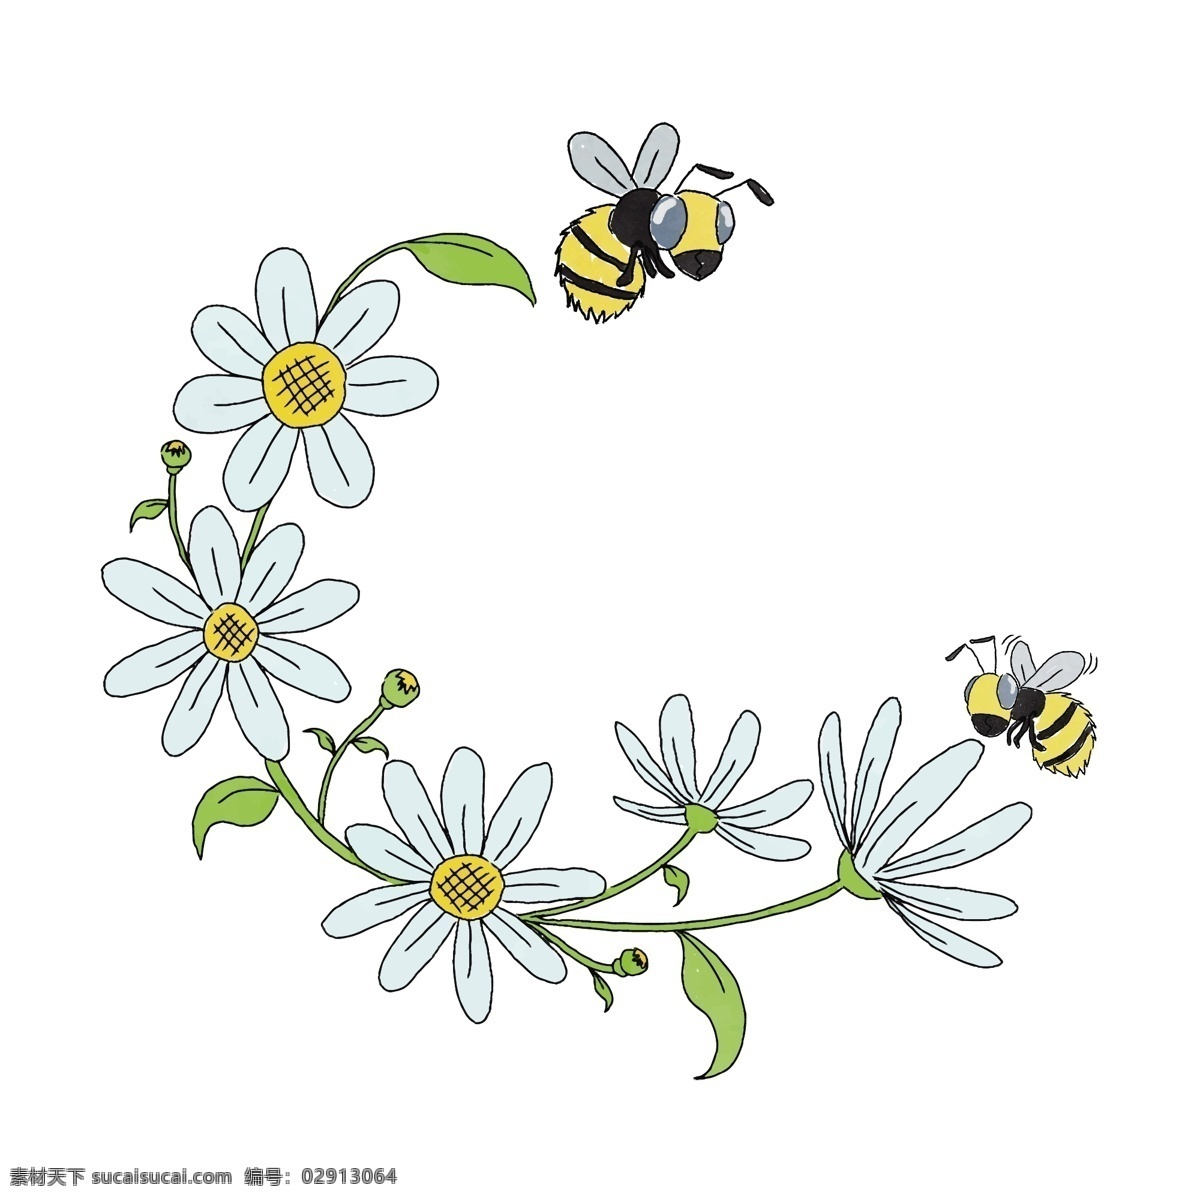 手绘 卡通 白色 花蜜蜂 矢量 蜜蜂 可爱蜜蜂 手绘蜜蜂 手绘花朵 手绘白色 白色花朵 花朵 手绘的蜜蜂 卡通的蜜蜂